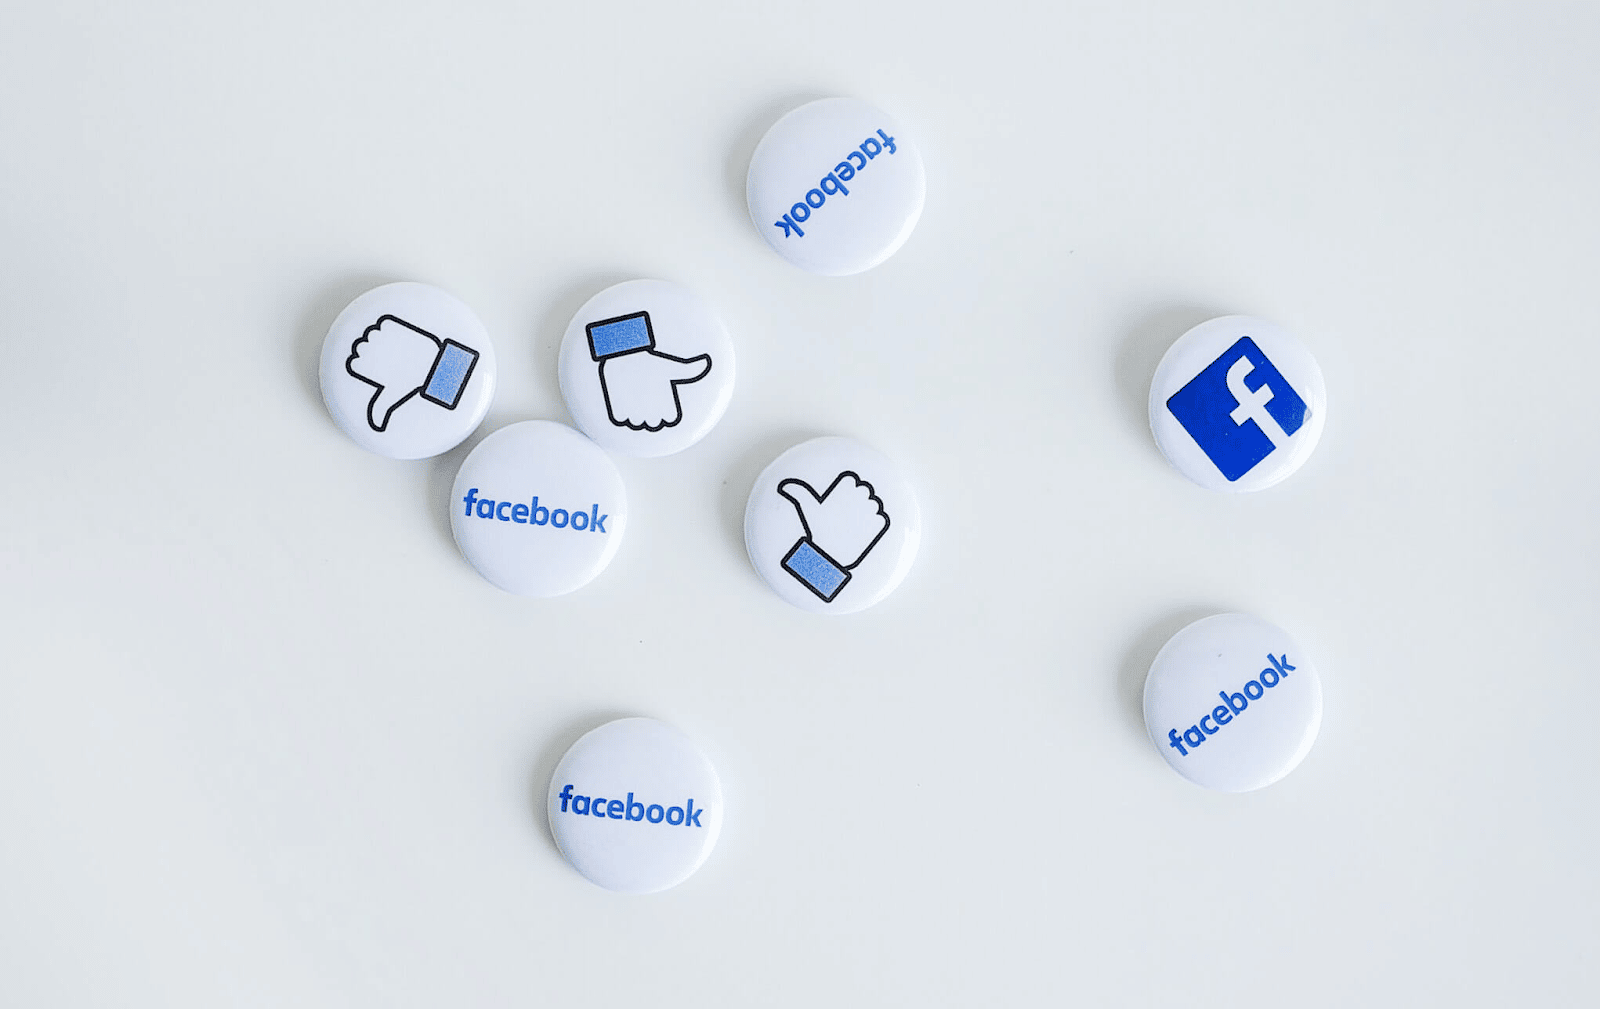 Theo thuật toán của kênh Facebook thì các bài post từ account cá nhân luôn được ưu tiên hiển thị nhiều hơn trên Bảng tin so với bài đăng của fanpage.